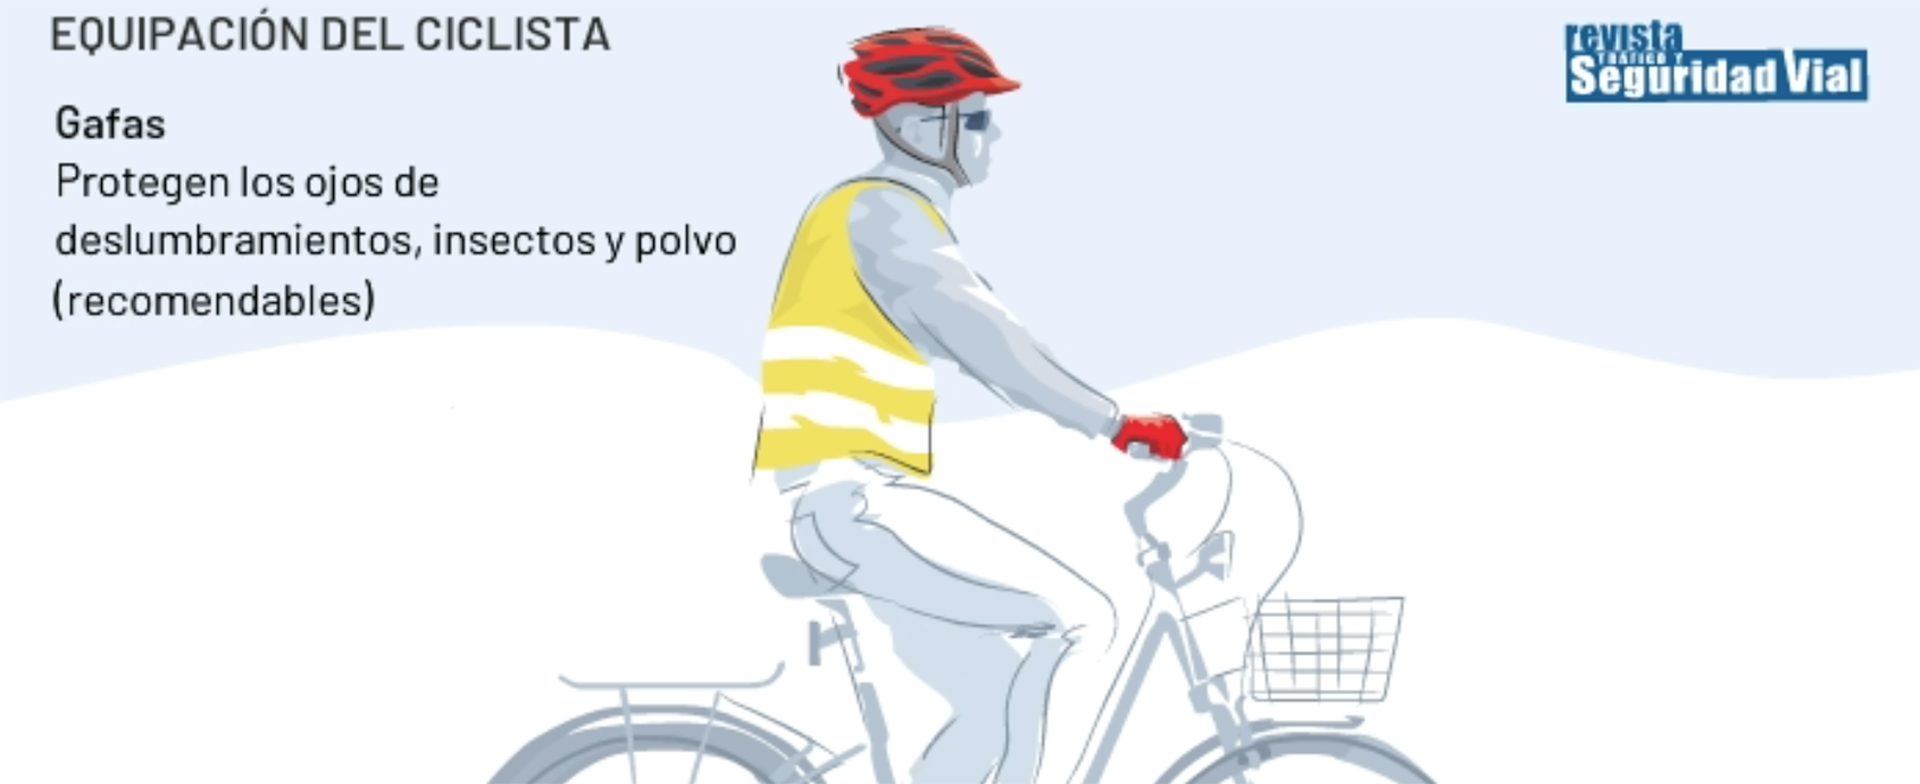 Es obligatorio llevar casco en bici en España?